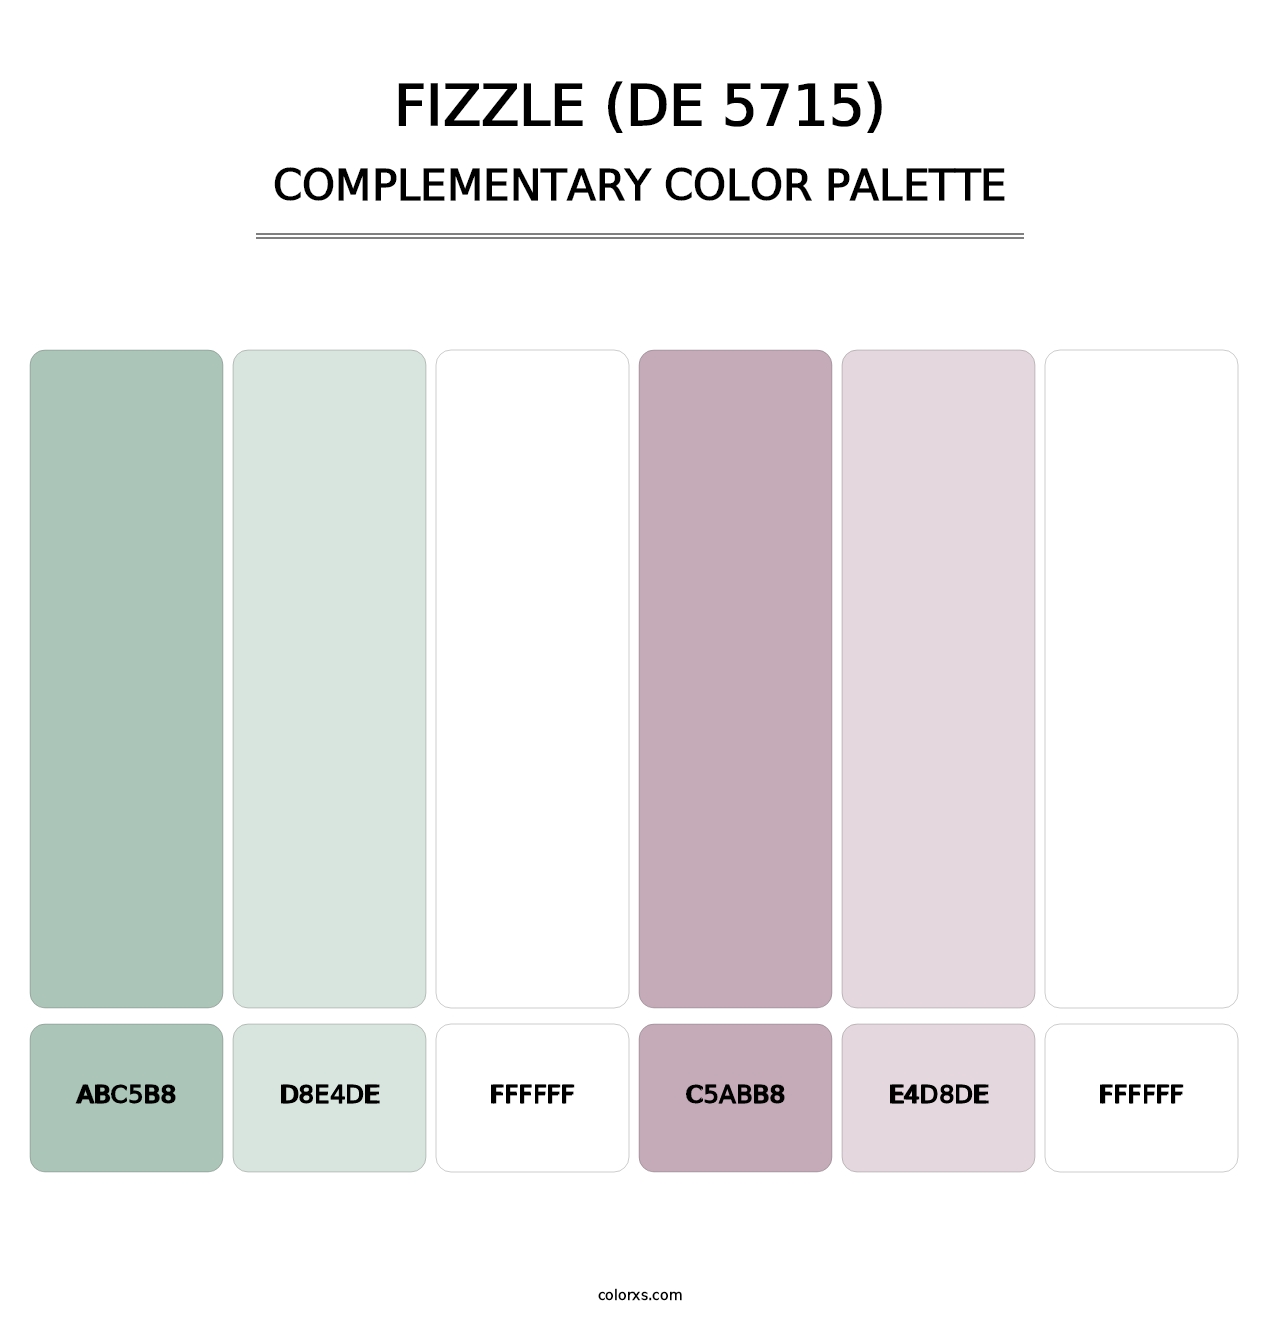 Fizzle (DE 5715) - Complementary Color Palette